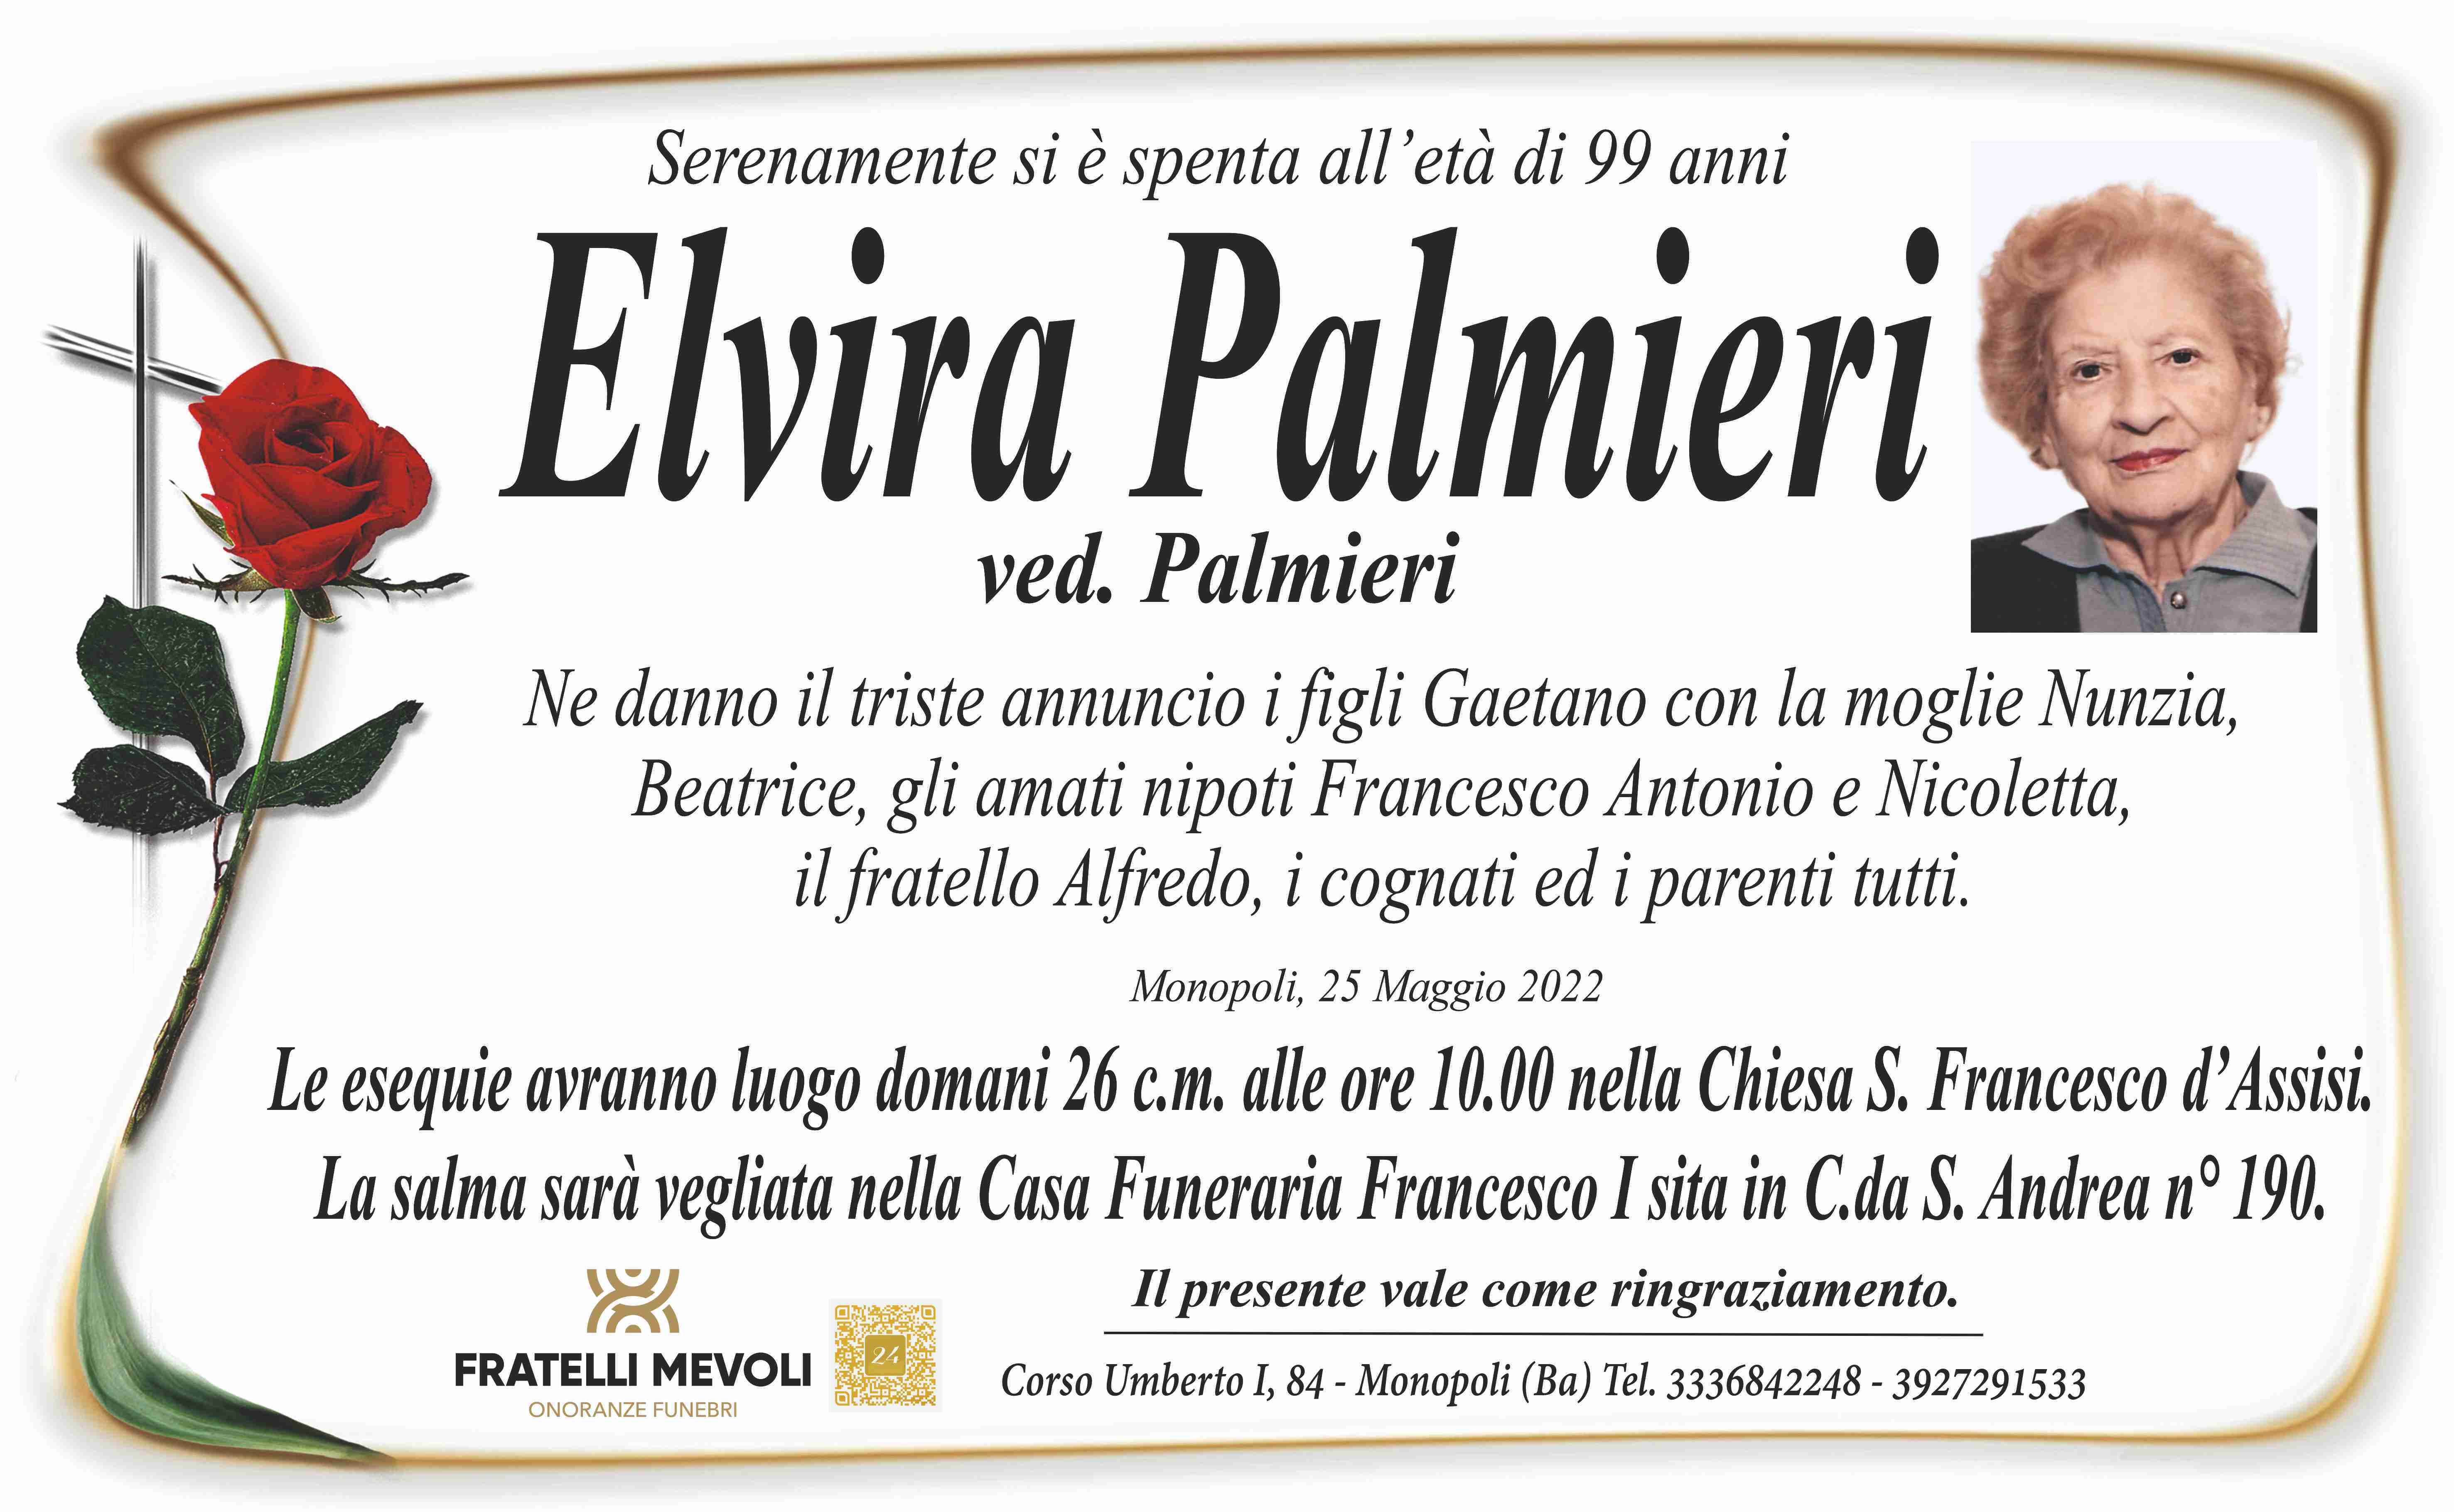 Elvira Palmieri